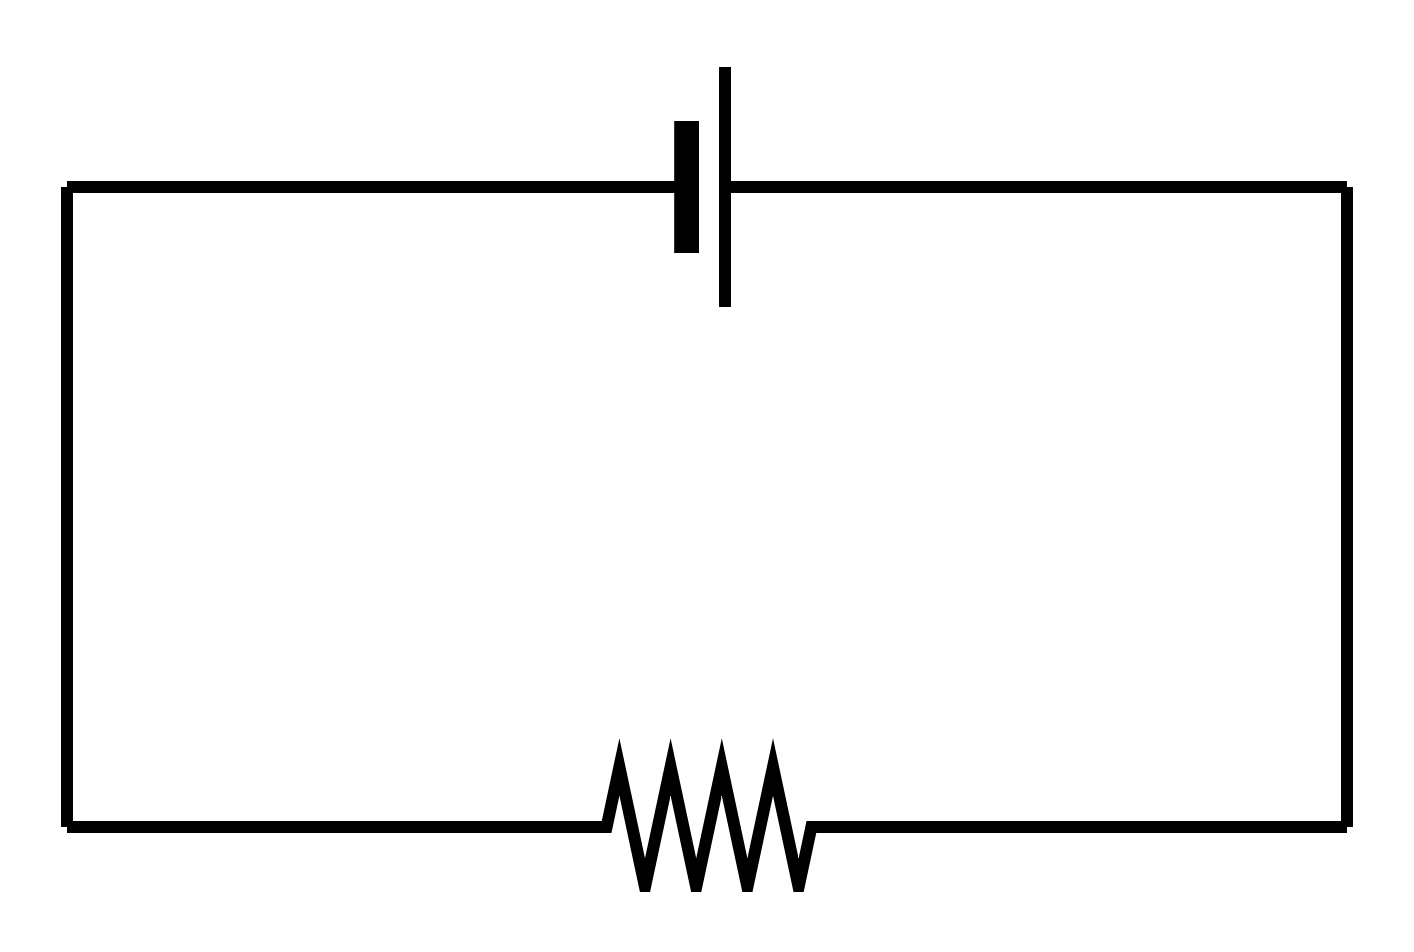 図1-1-5-1.電気回路(または電子回路)